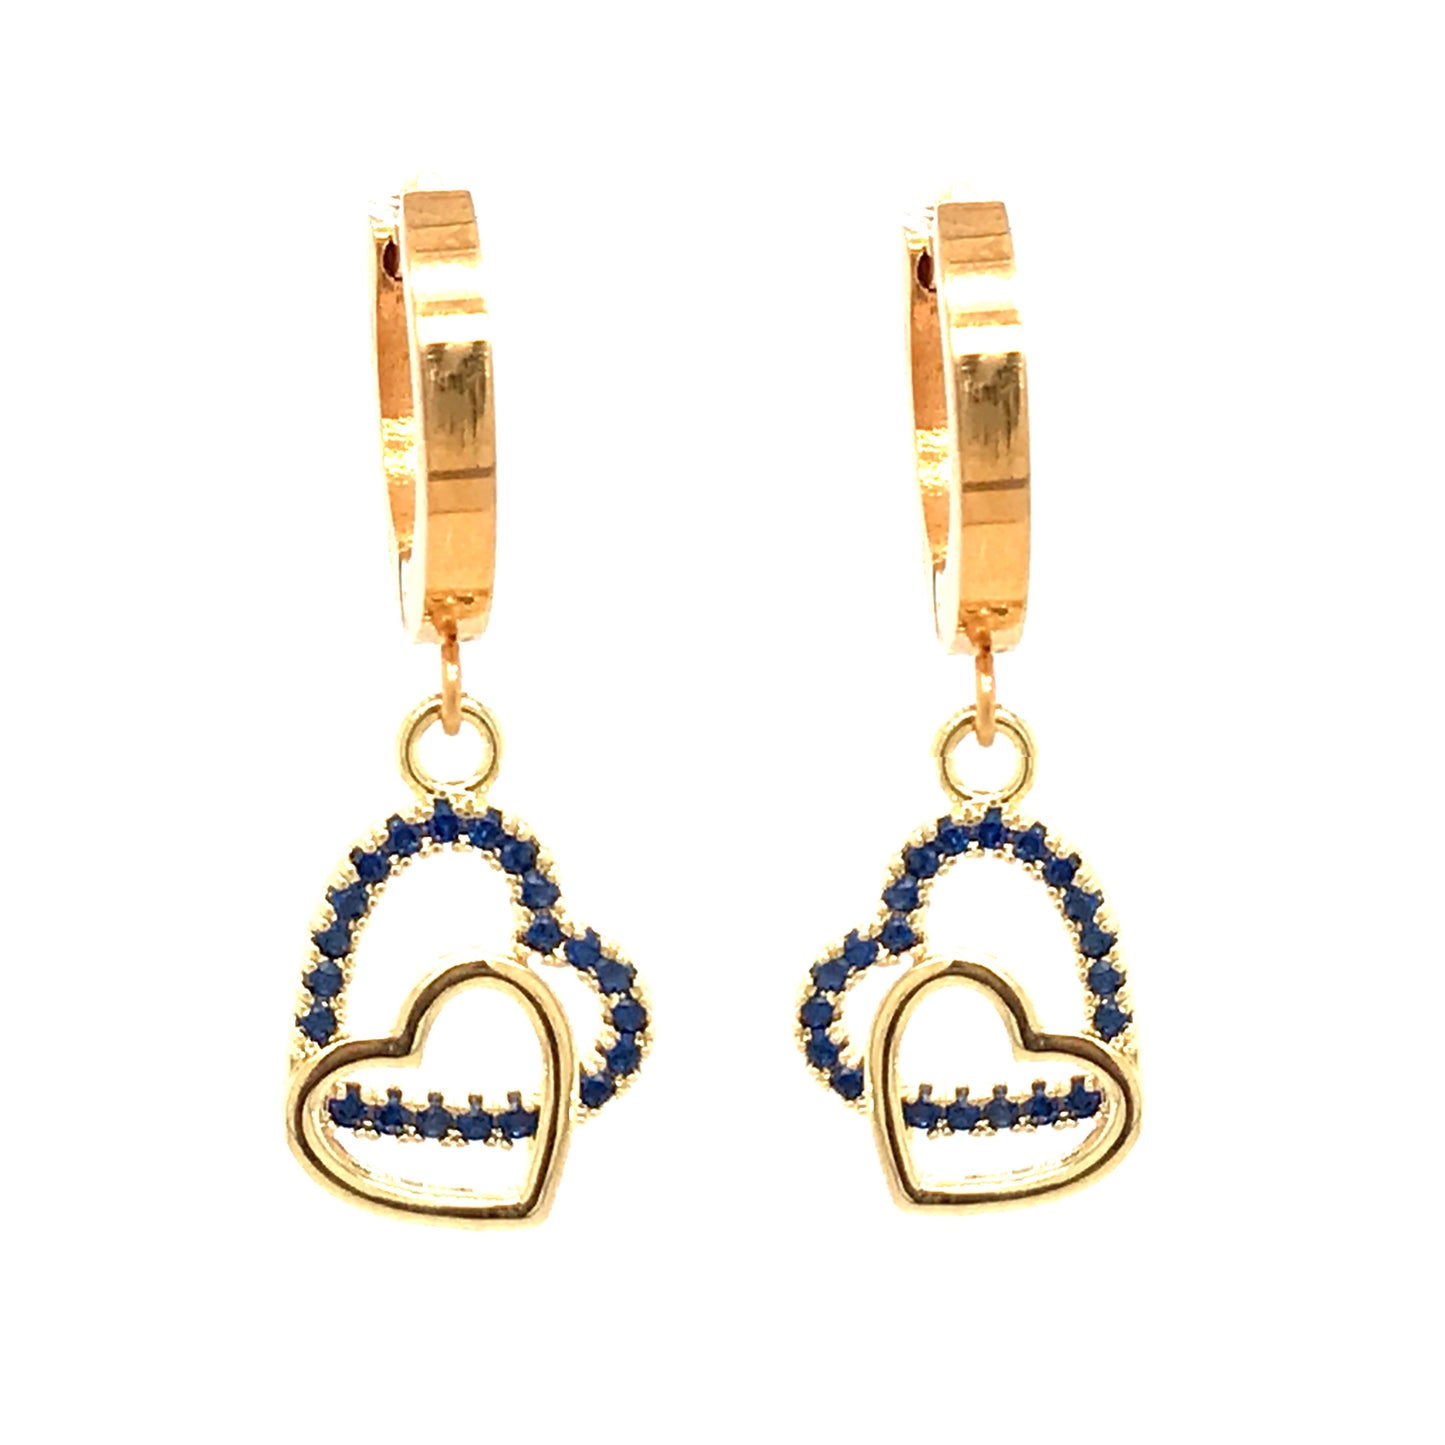 Surgical Steel Blue Double Heart Earrings - HK Jewels